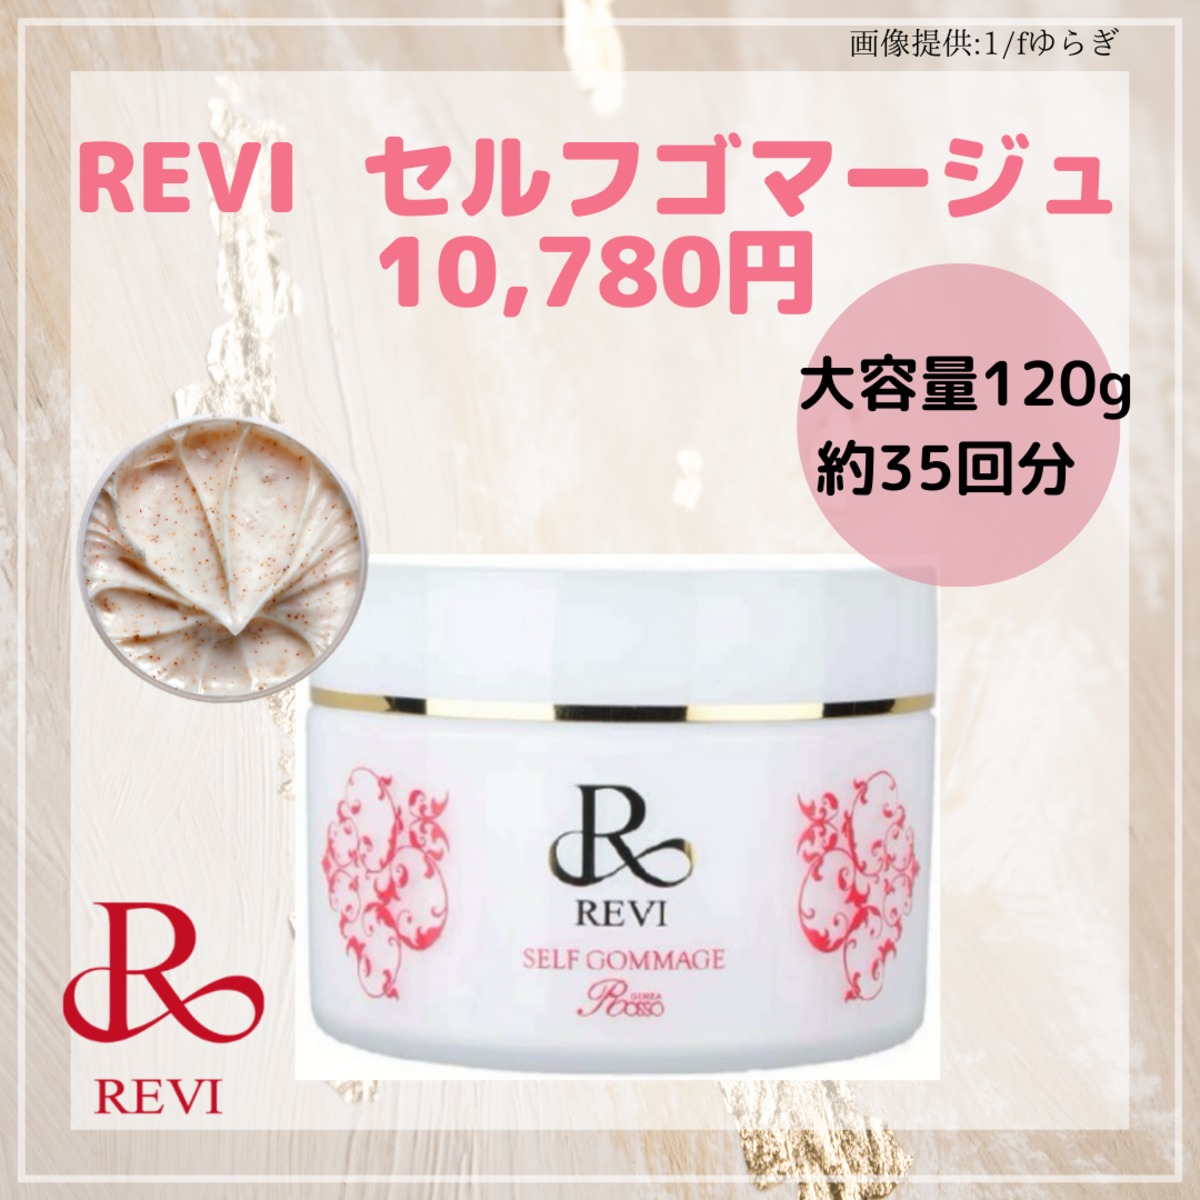 REVI 洗顔 クレンジング 化粧水 ゴマージュ モイストクリーム - 洗顔料